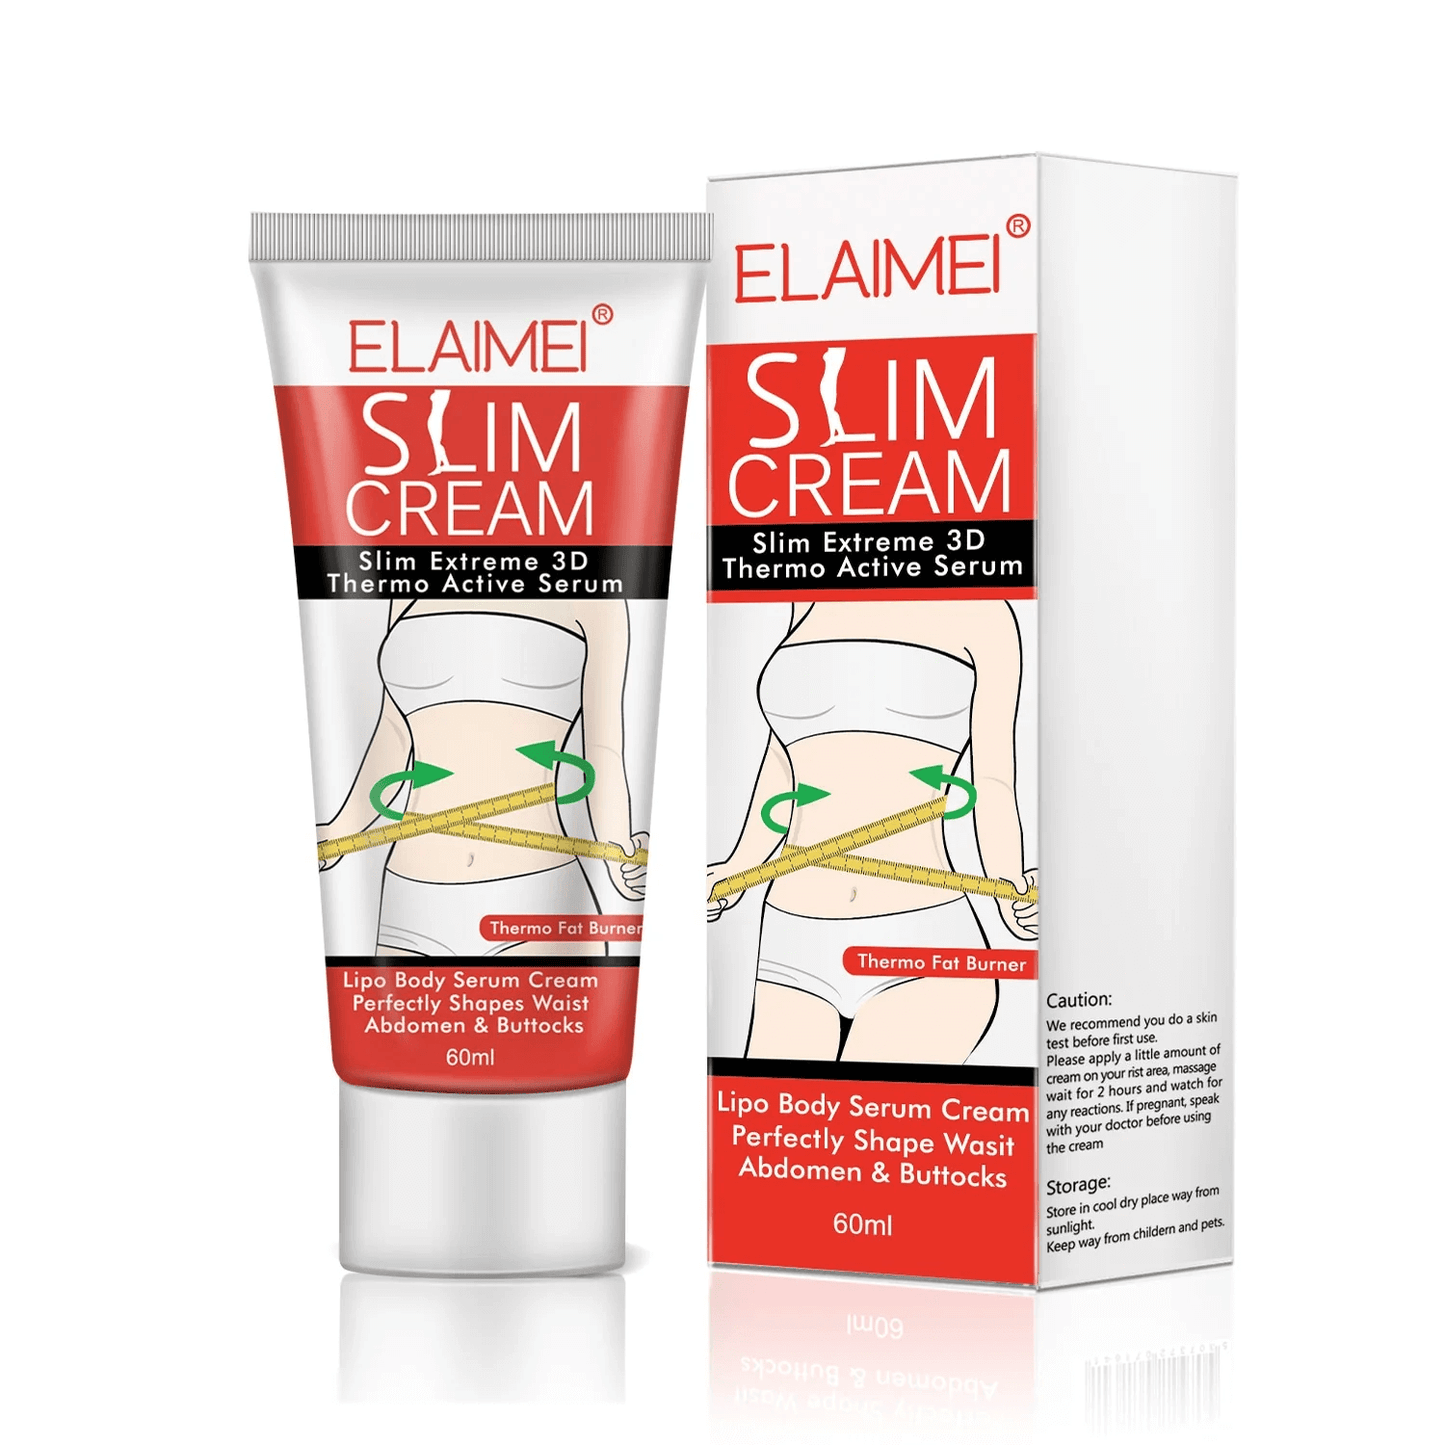 Slimming Cream